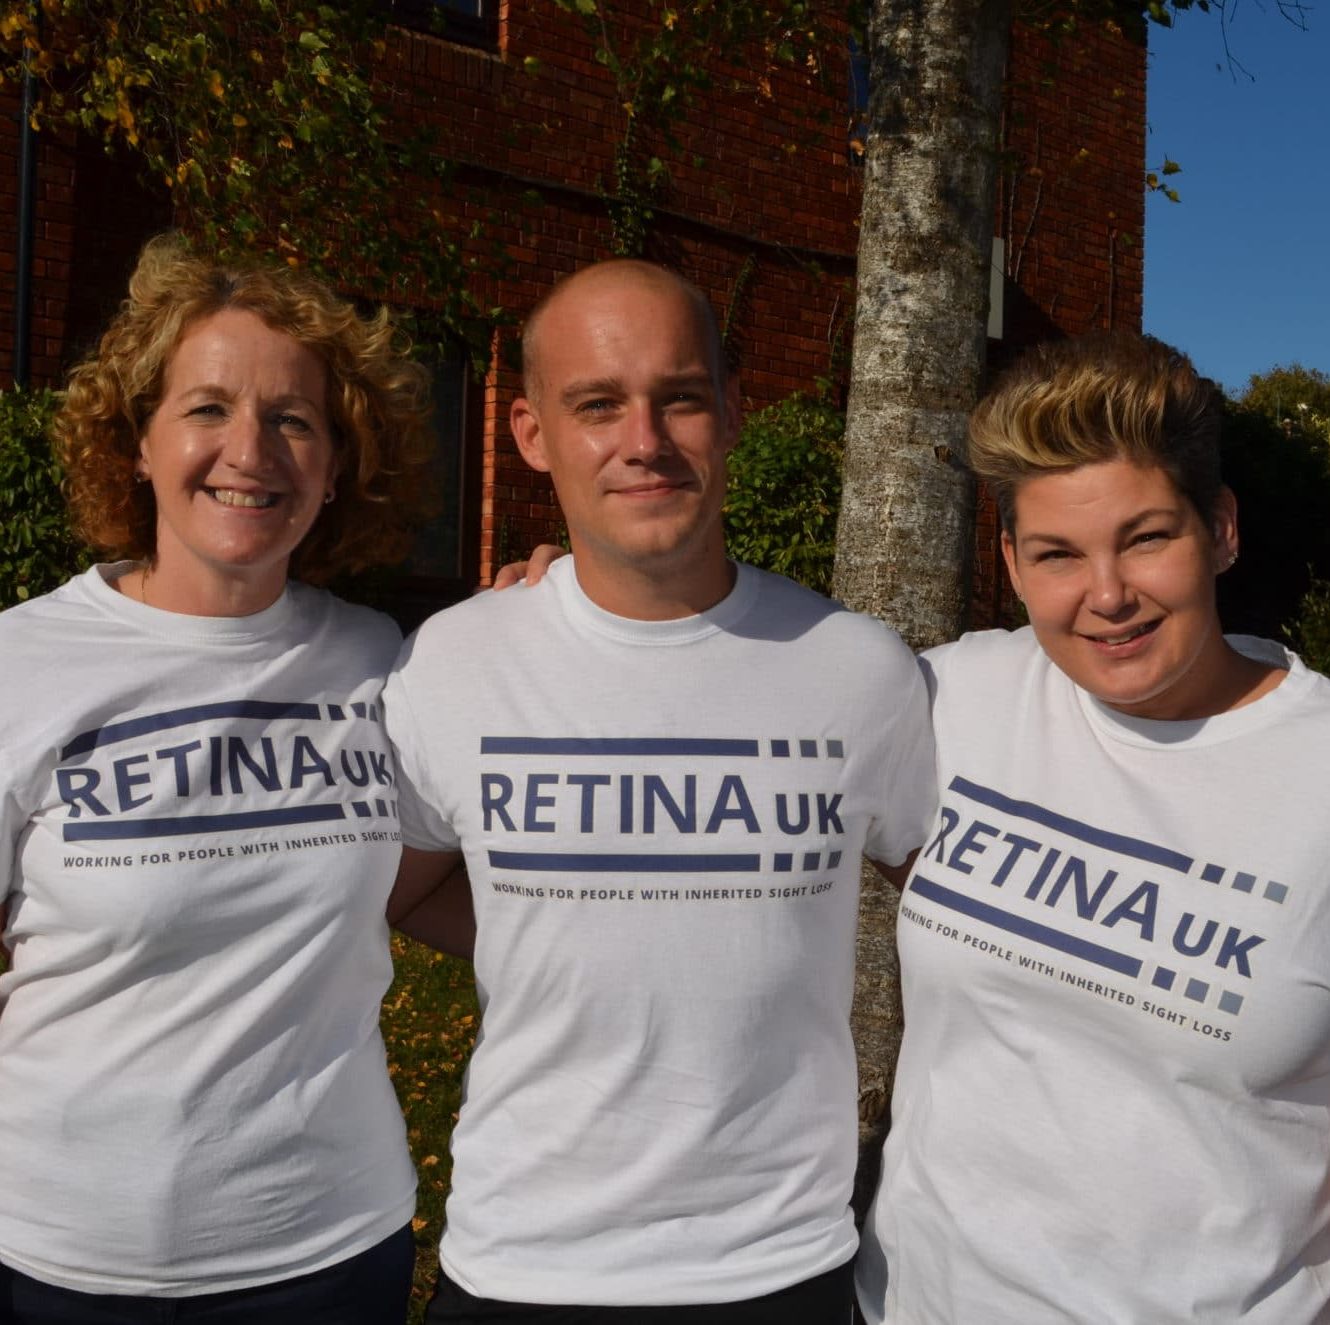 Three people smiling in Retina UK T shirts